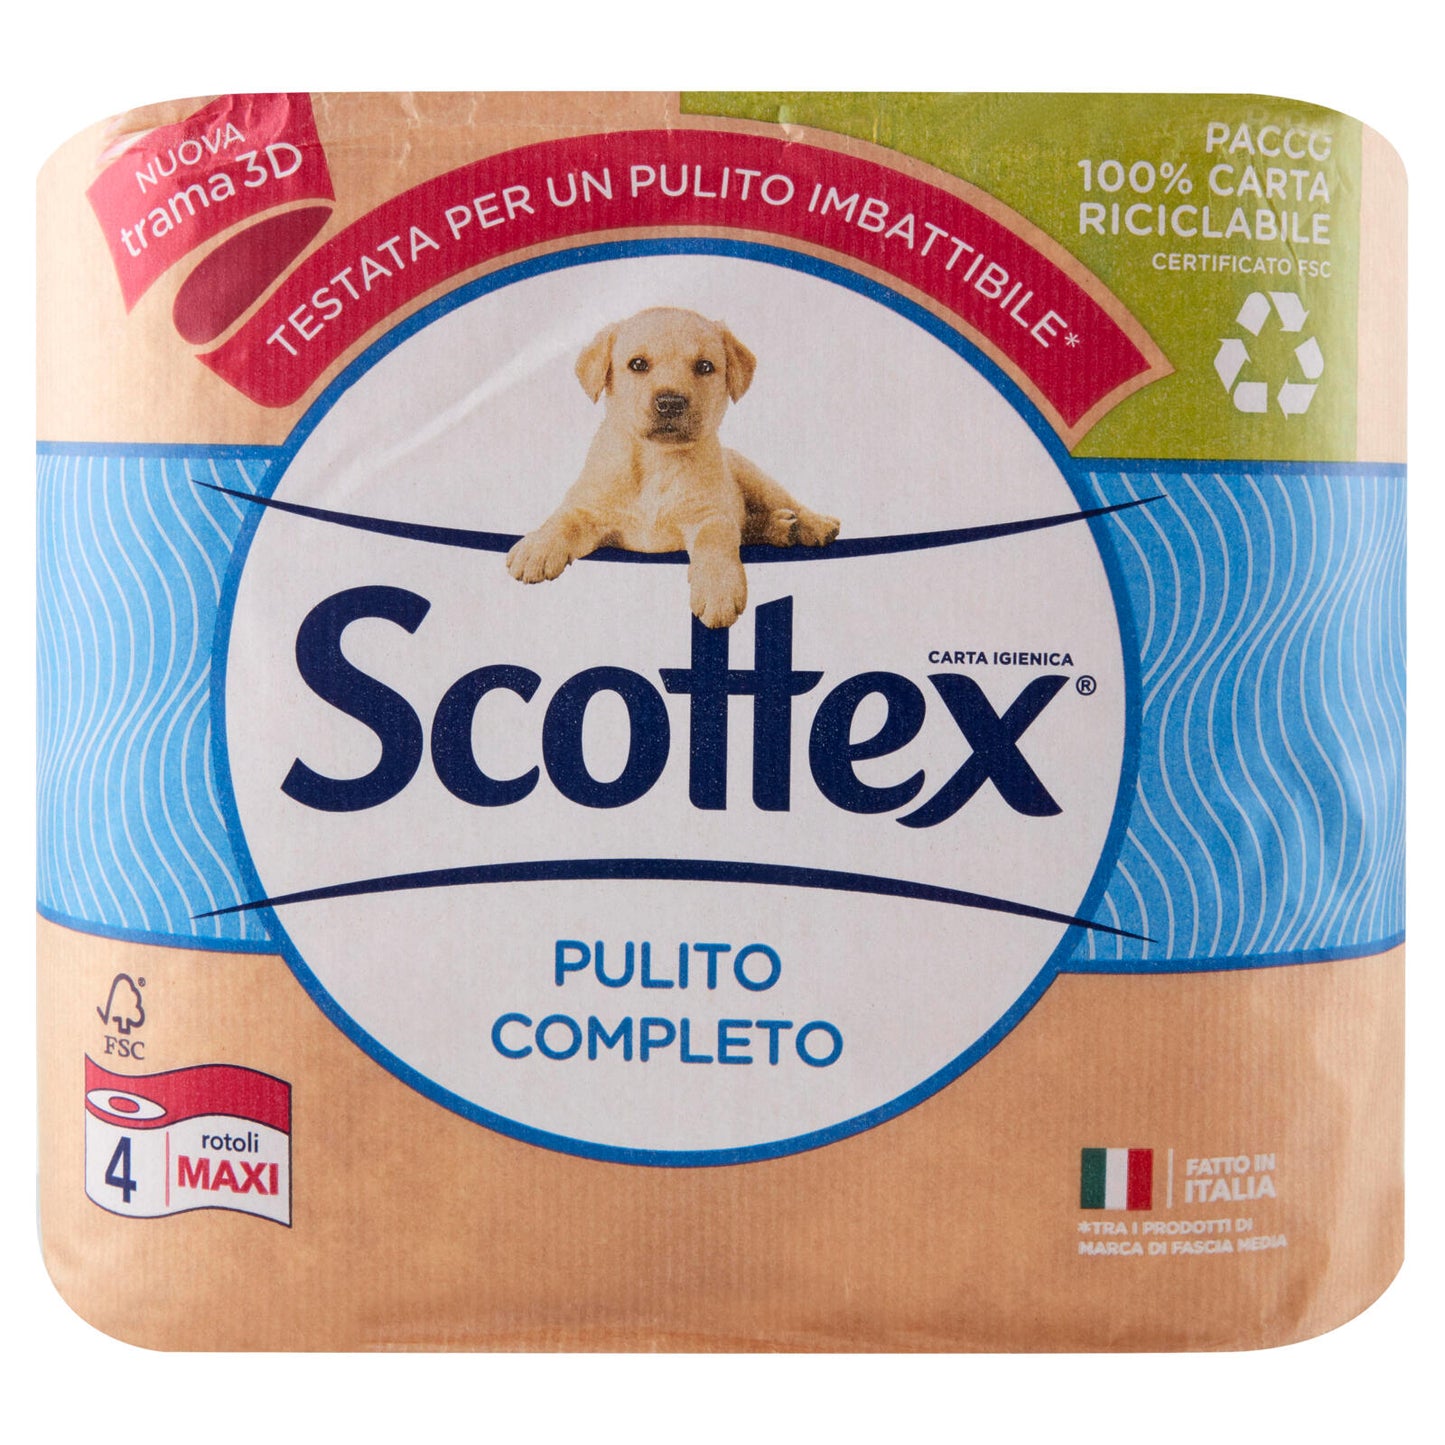 Scottex Pulito Completo Carta Igienica 4 pz ->